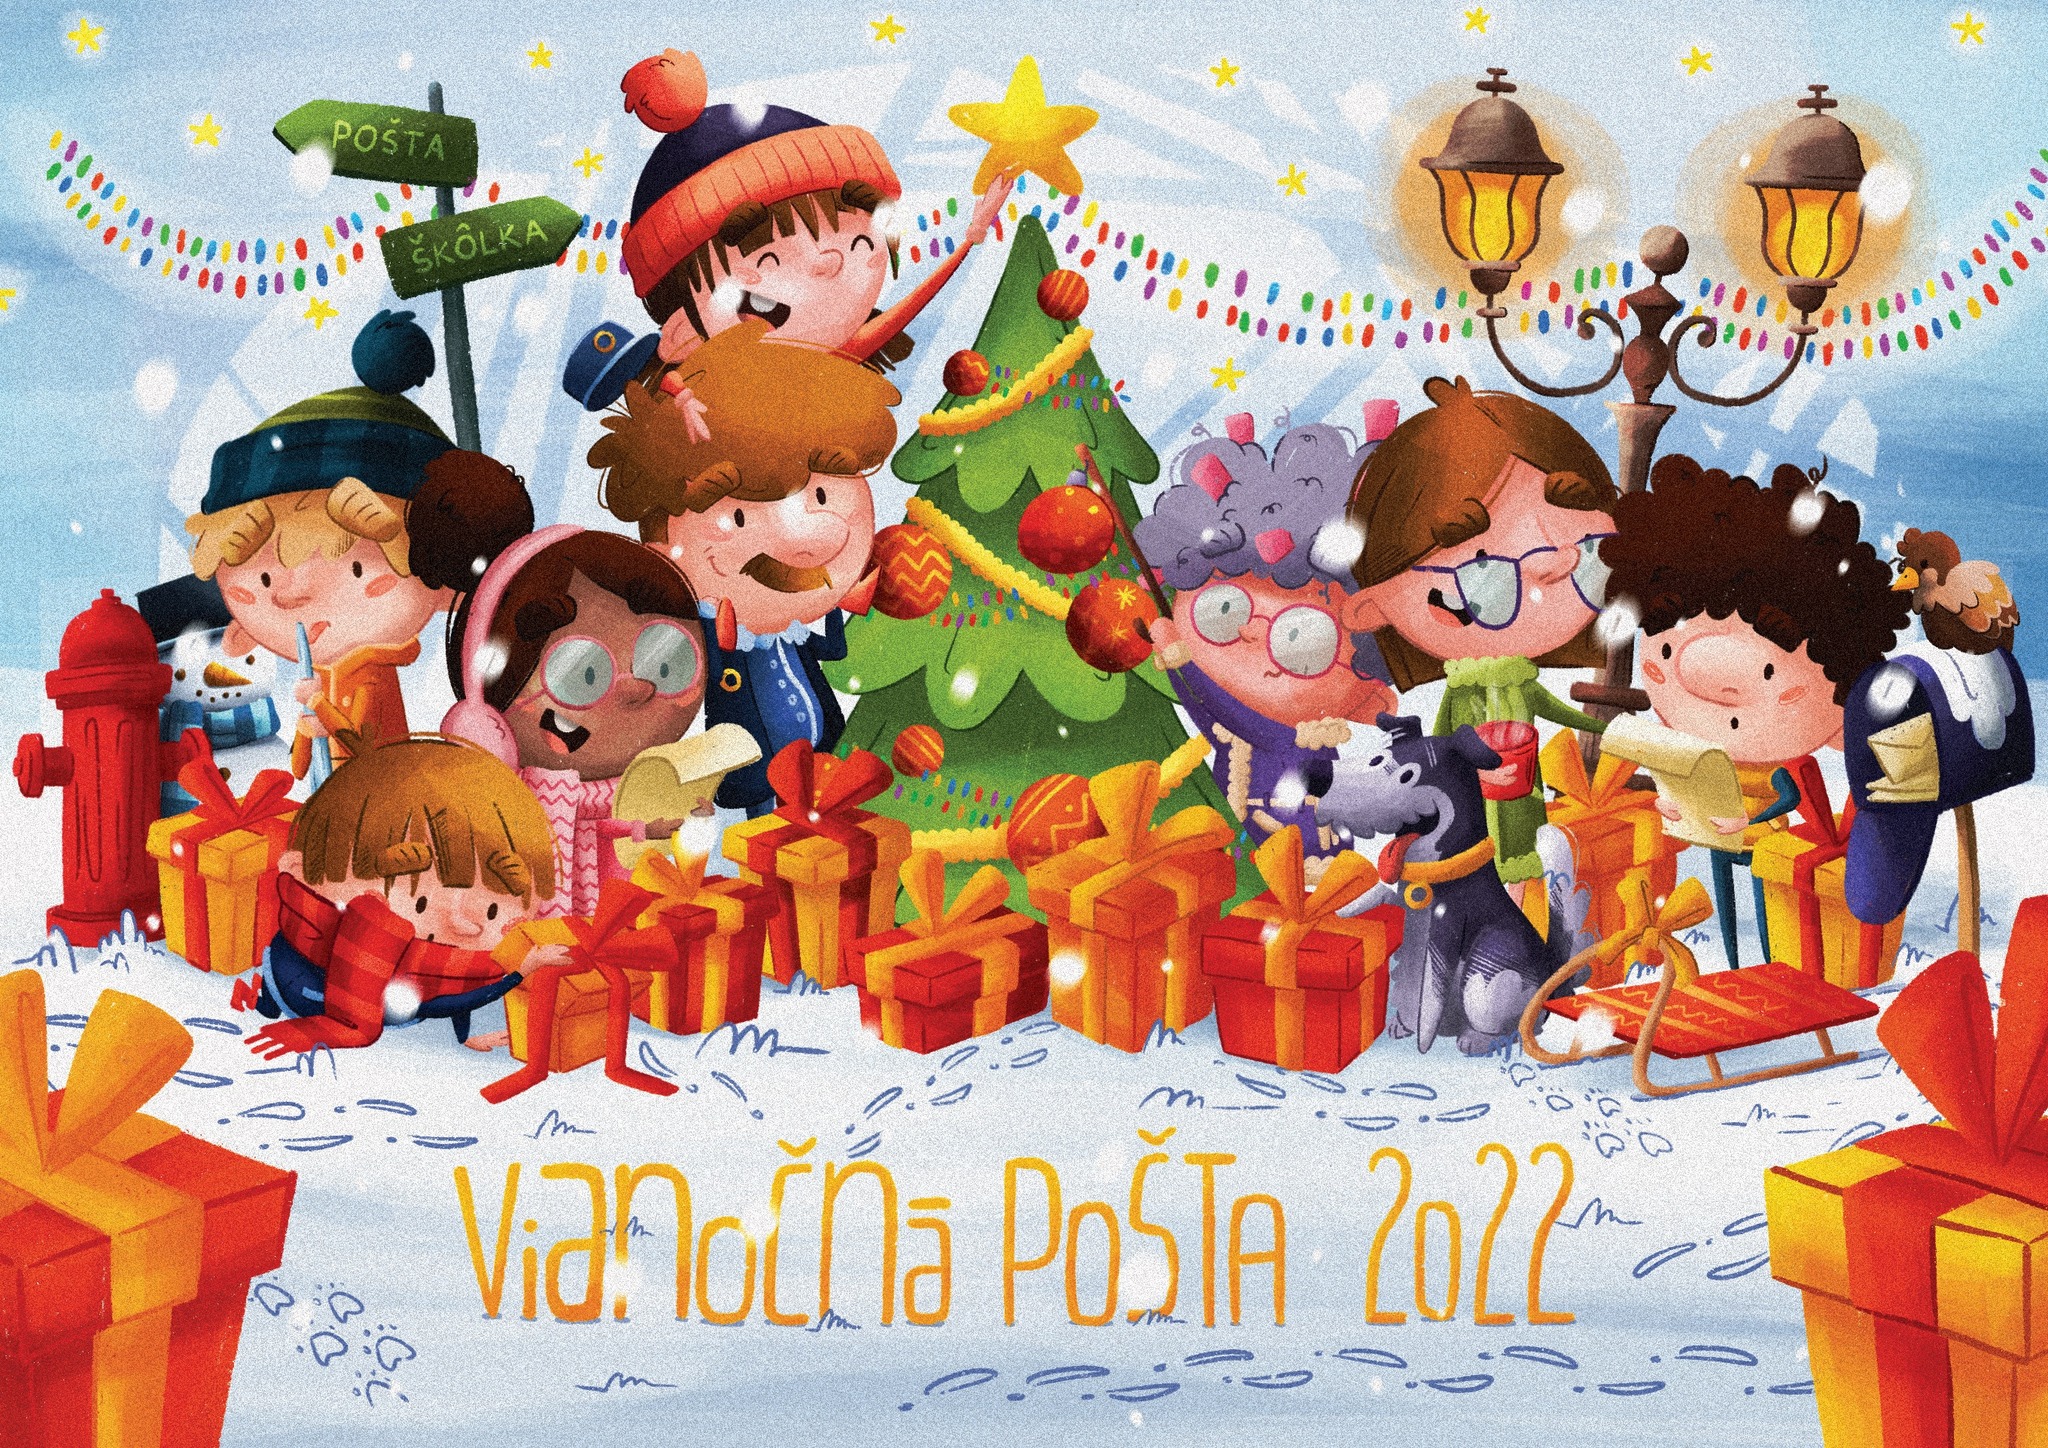 NEW - - - Vianon pota 2022 (Christmas Post Office) from Slovensk pota 202